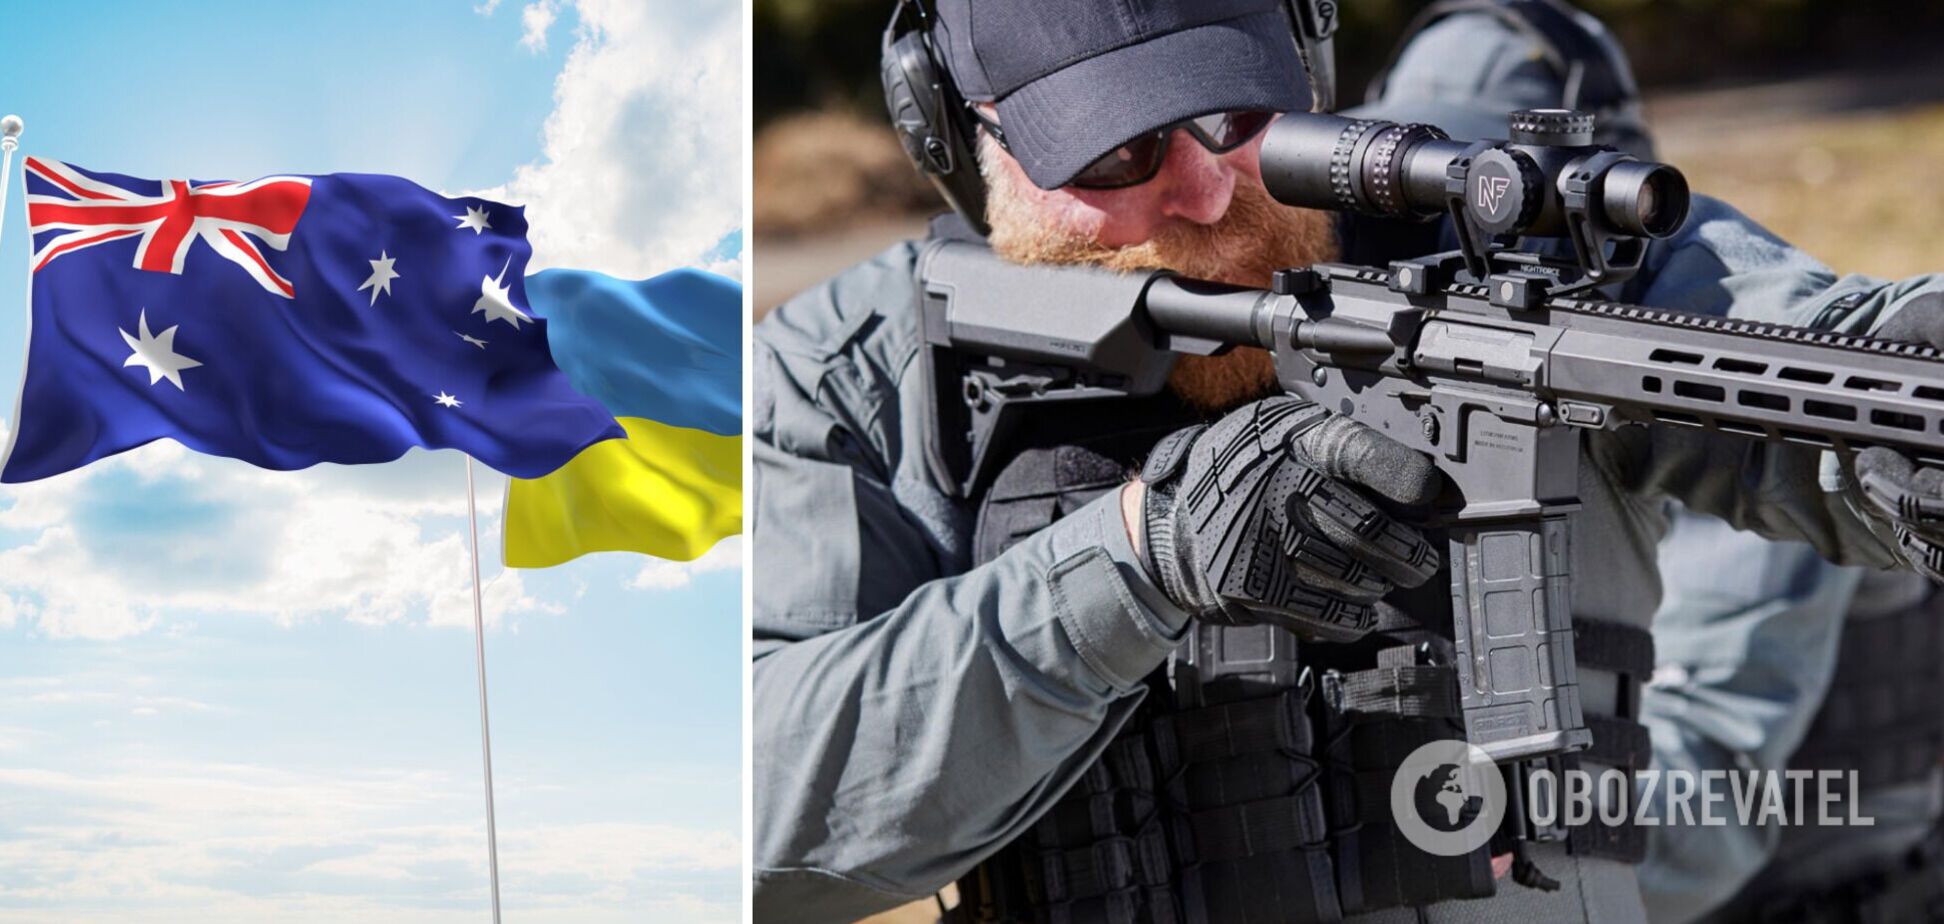 Австралия передала Украине новейшие штурмовые винтовки ACAR: тестирование пройдет в боевых условиях